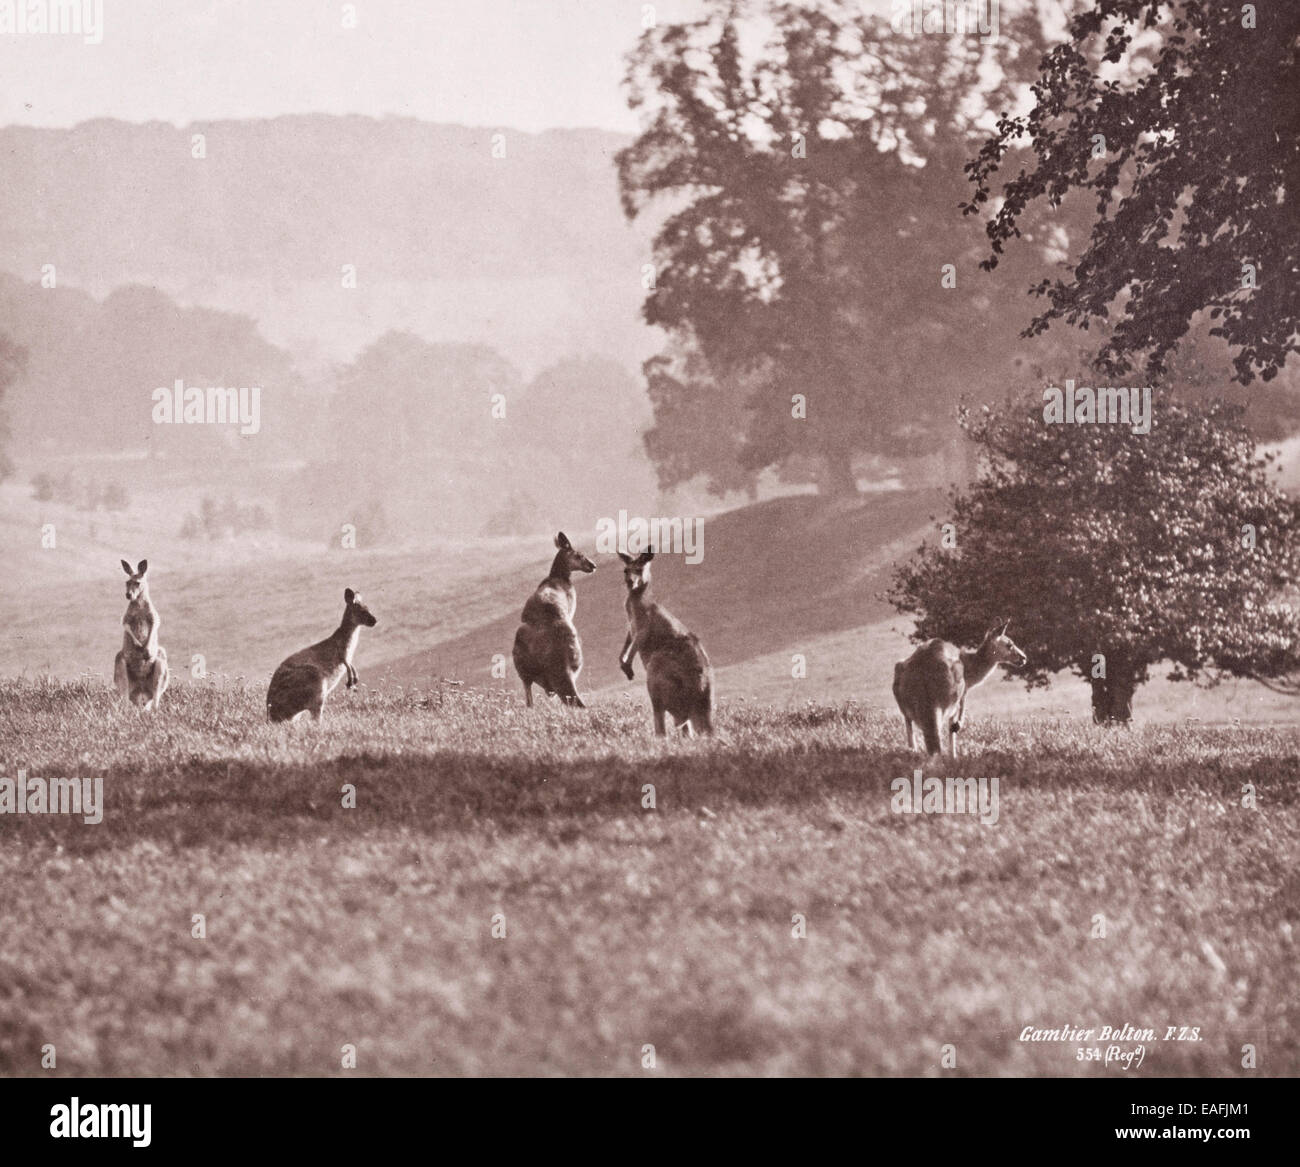 Grupo de canguros por Gambier Bolton Foto de stock